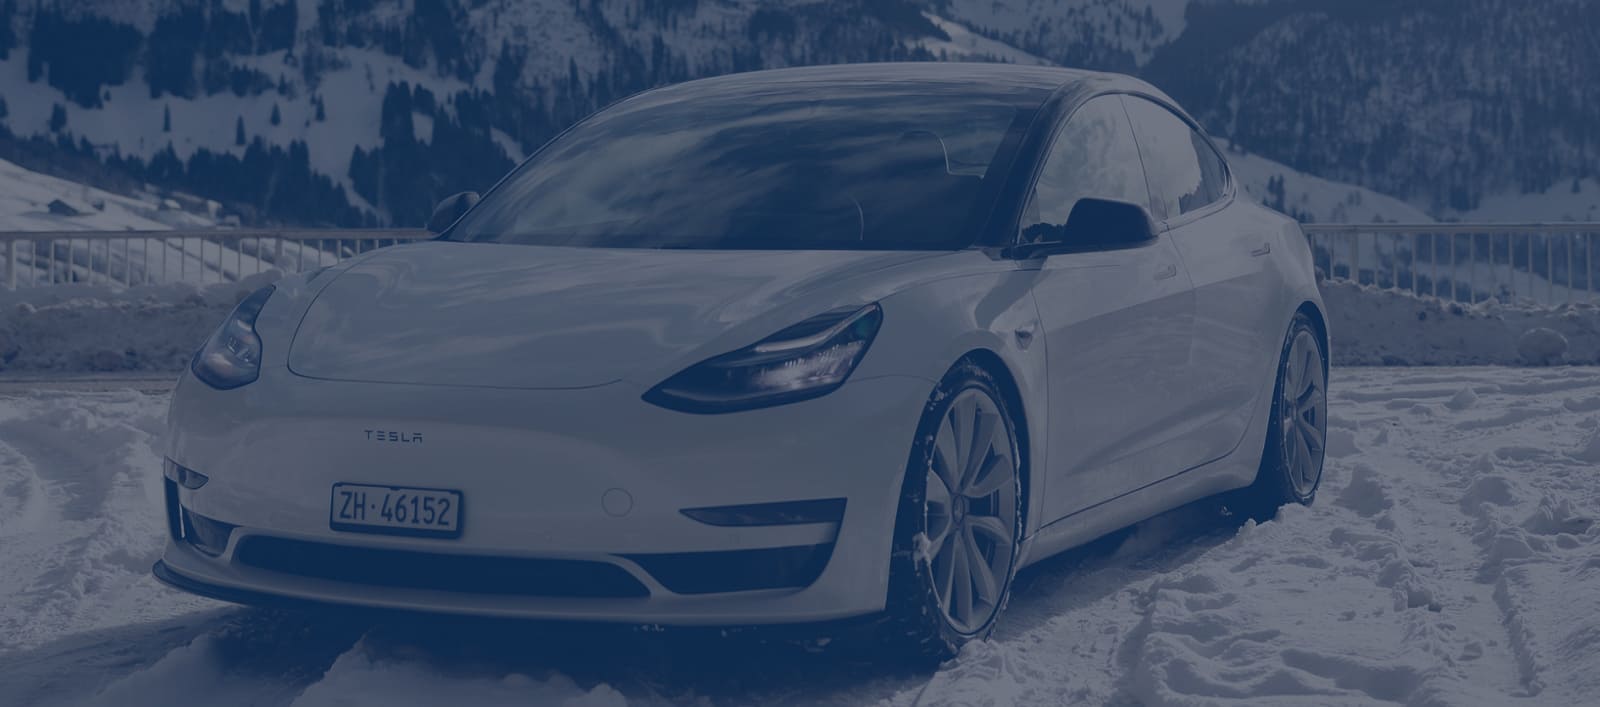 E-Auto im Winter: So erhöhst Du die Reichweite von Elektroautos im Winter